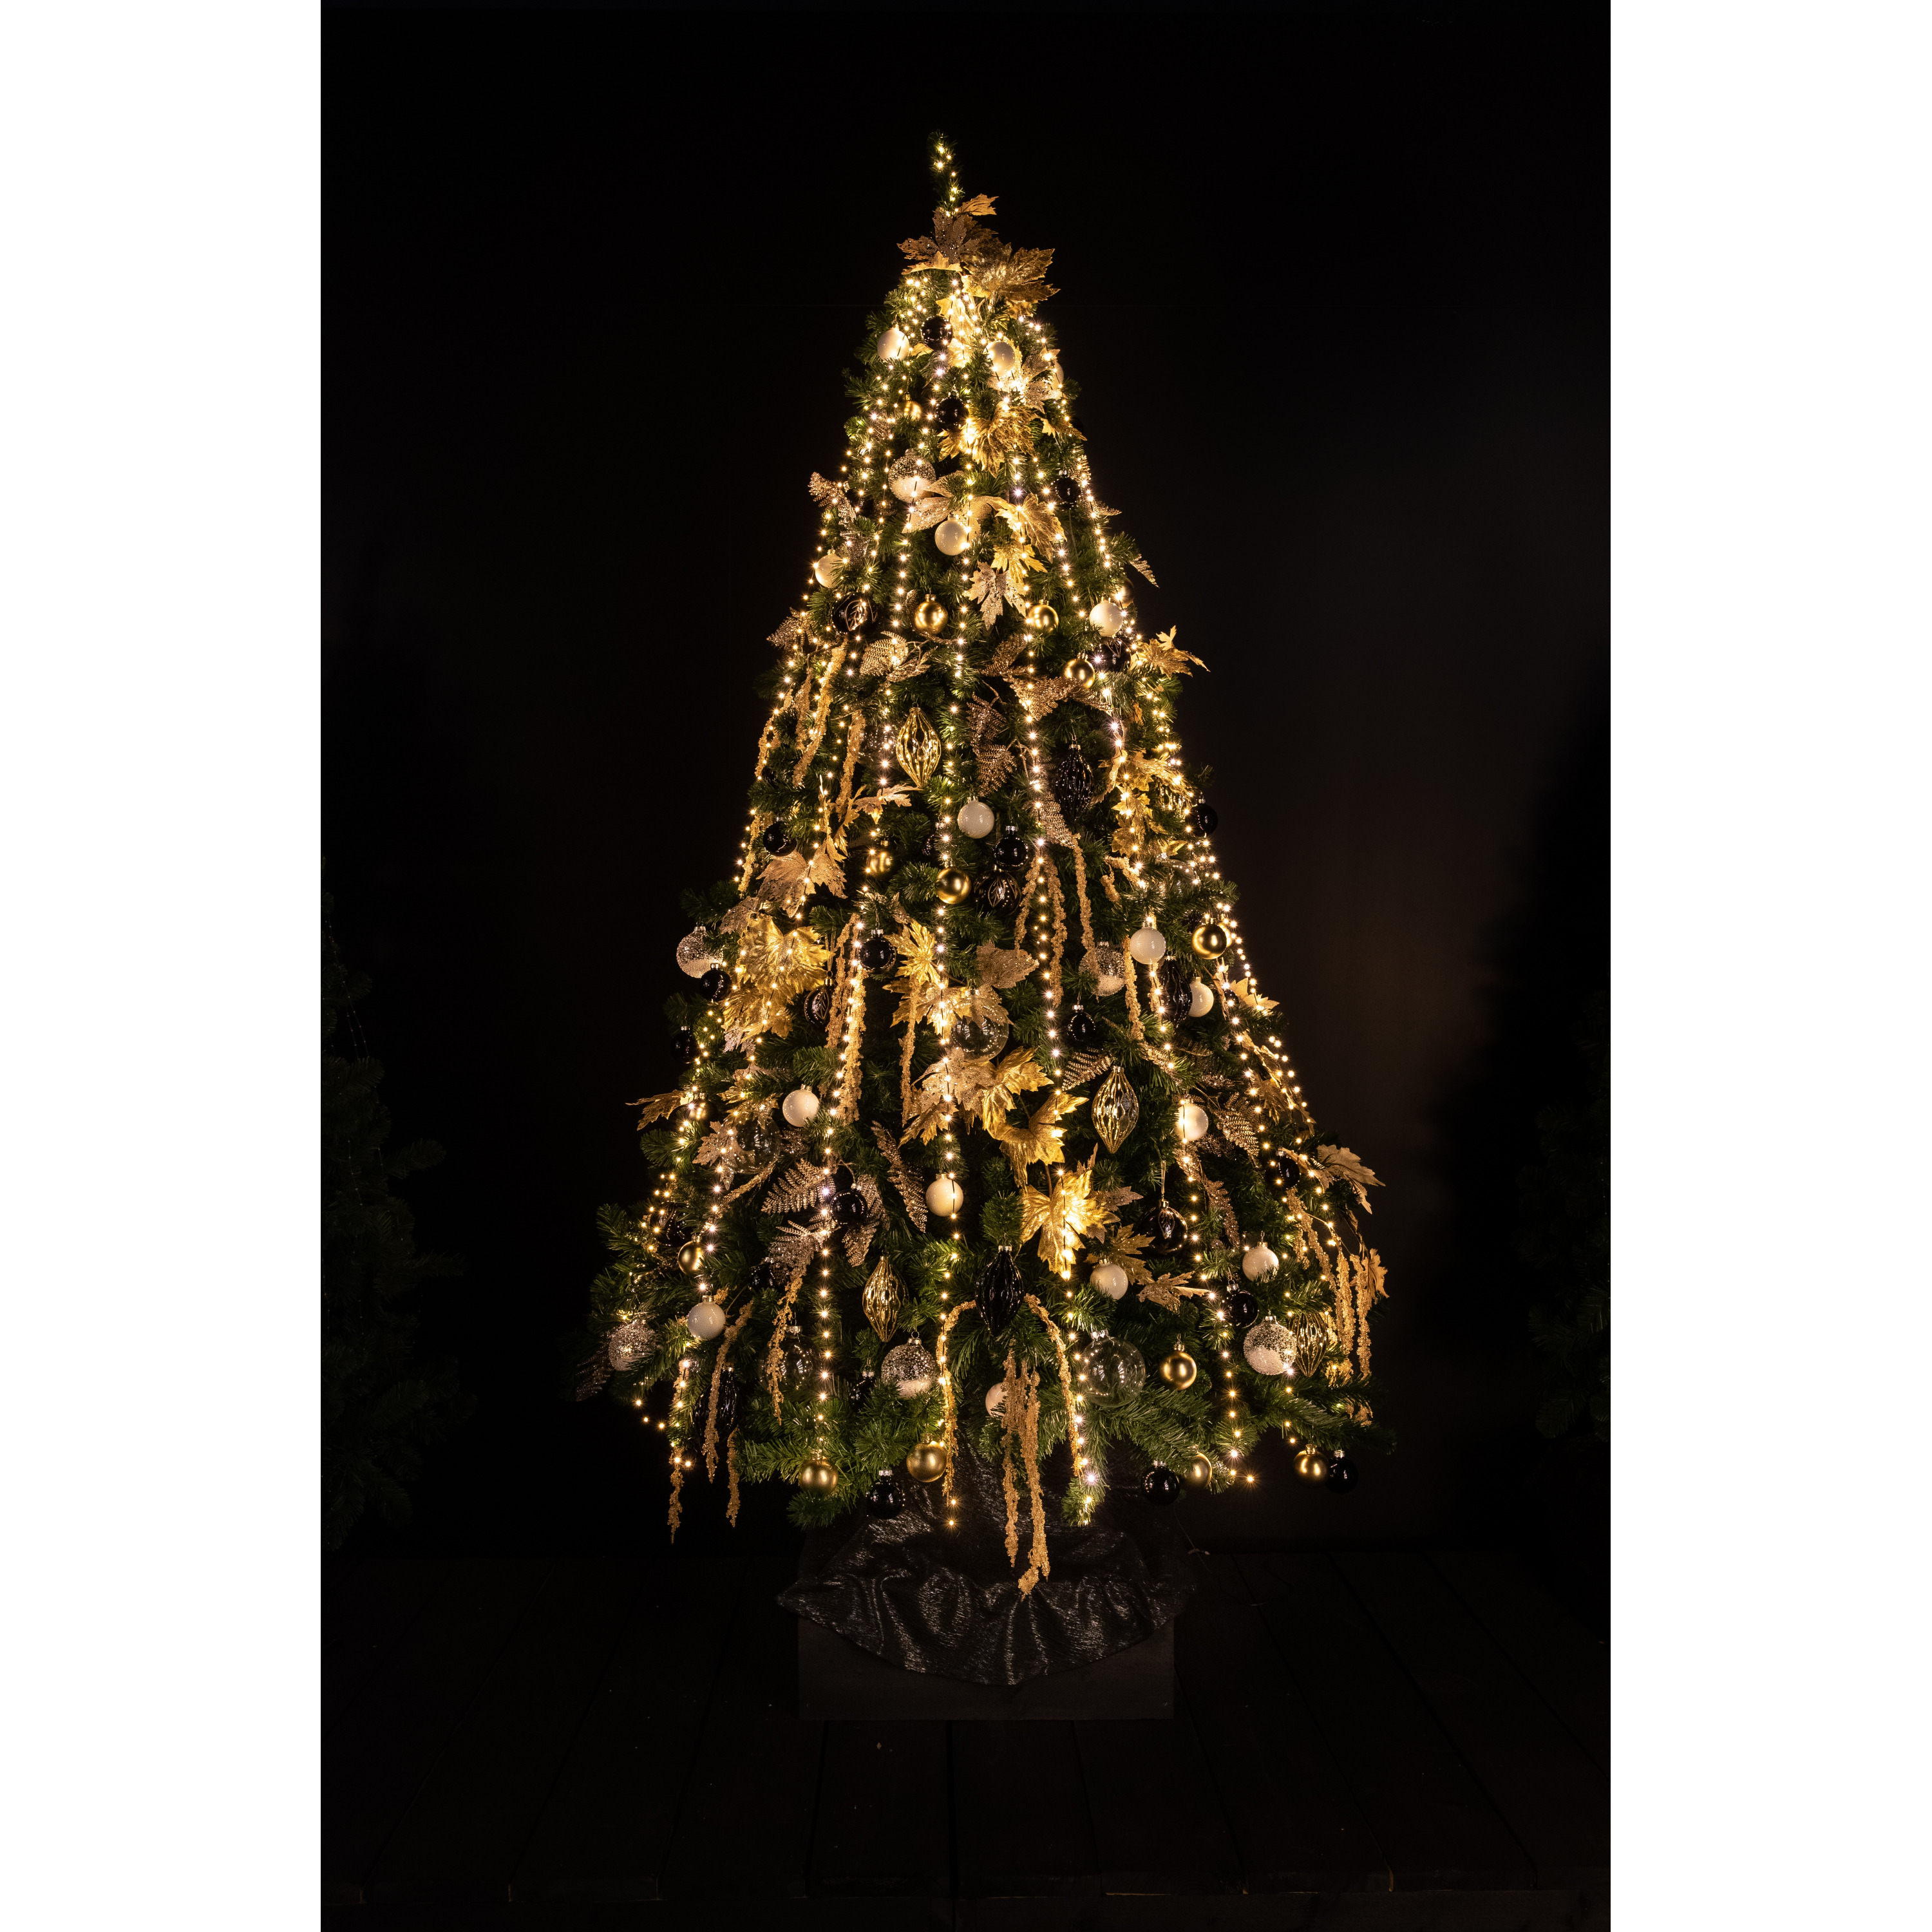 Cascade kerstverlichting -480 leds warm wit voor kerstboom 150 cm